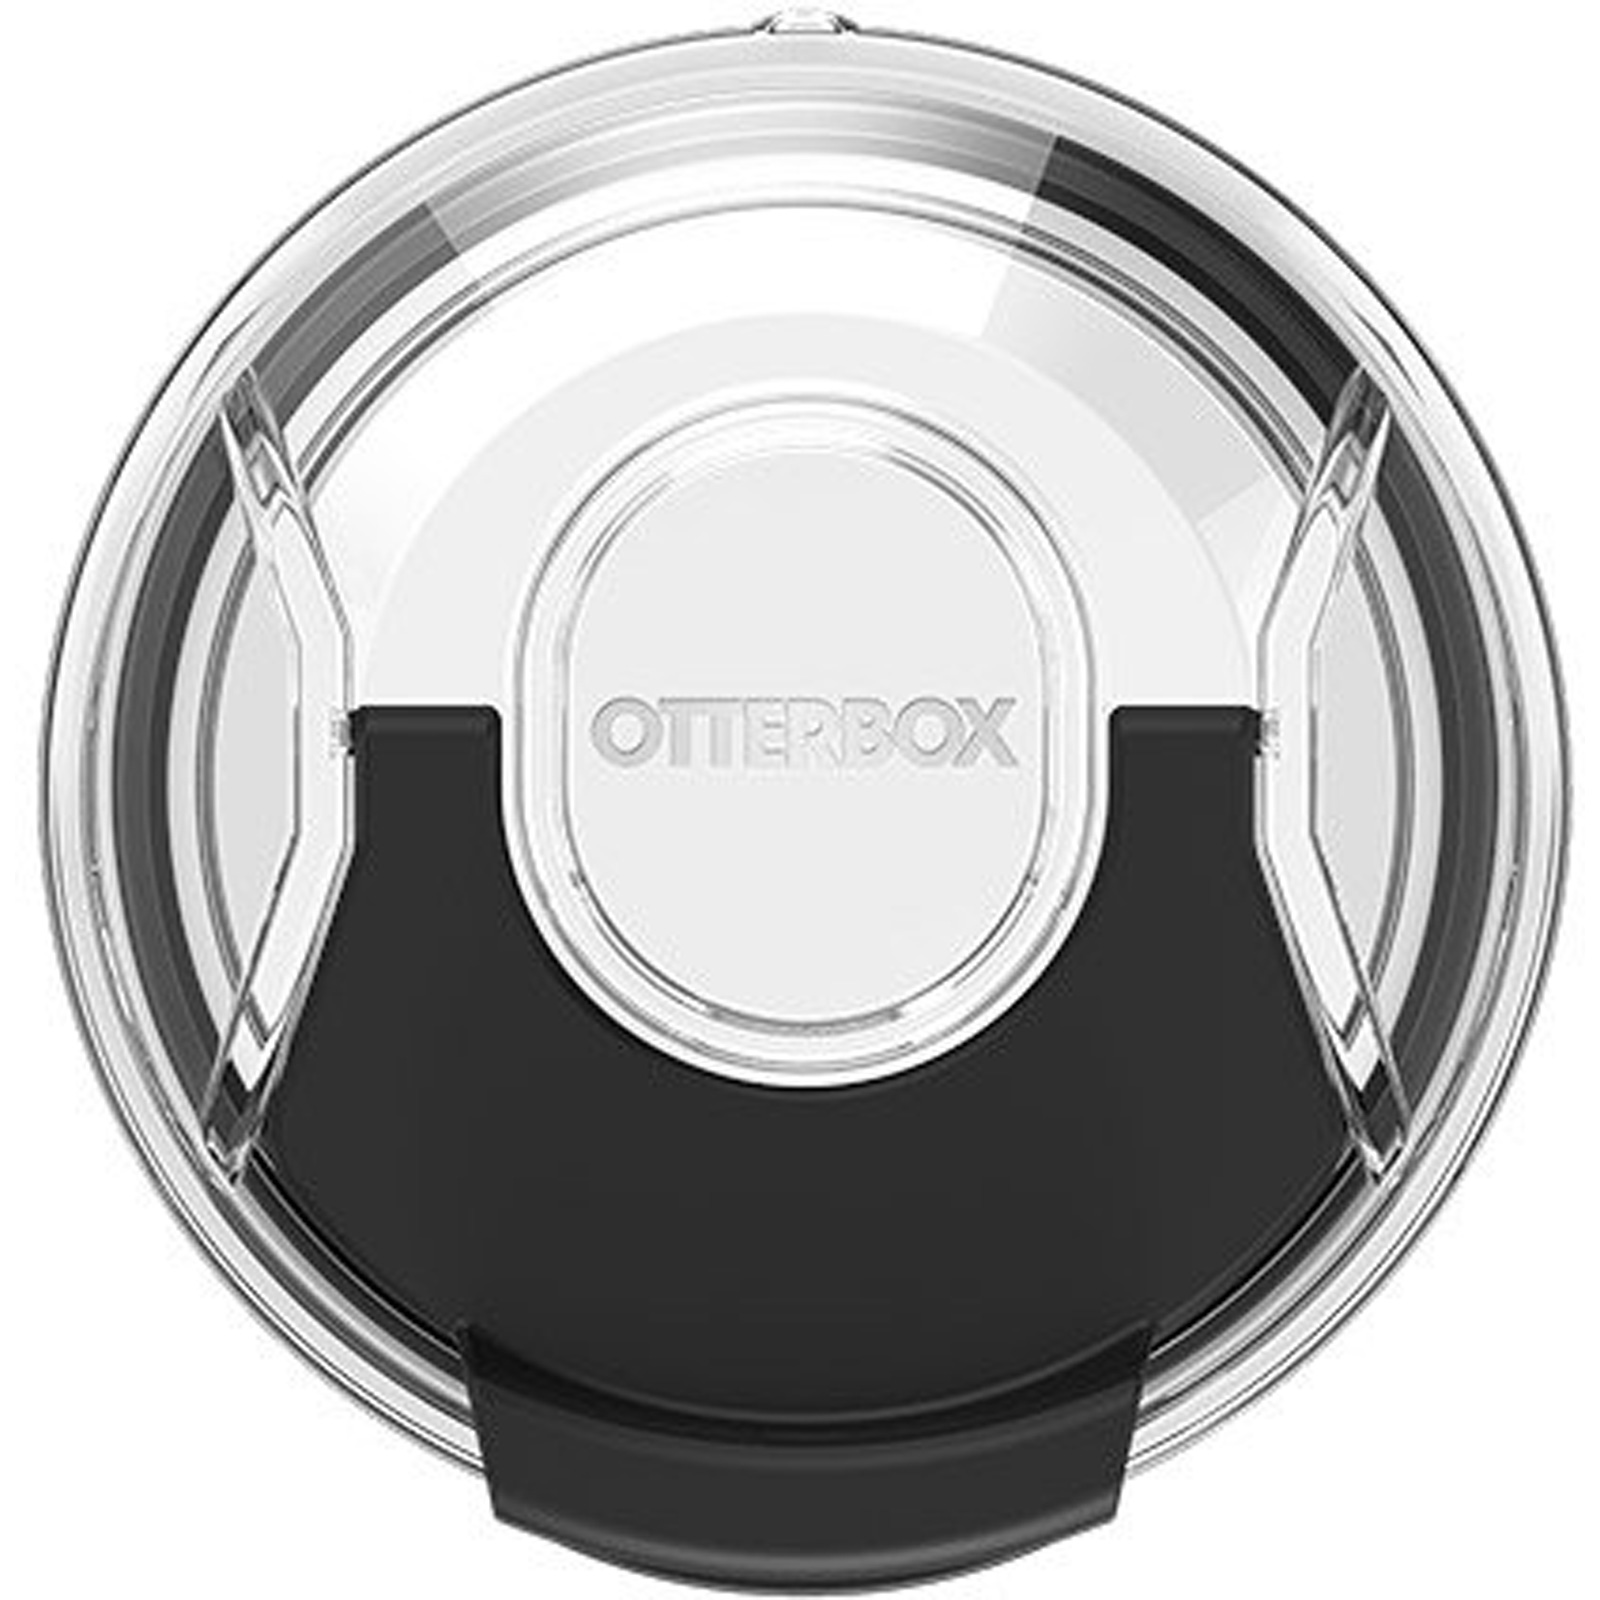 https://www.otterbox.com/on/demandware.static/-/Sites-masterCatalog/default/dw9f4d7385/productimages/dis/outdoor/otr57-tumbler-20/otr57-tumbler-20-4714-5.jpg